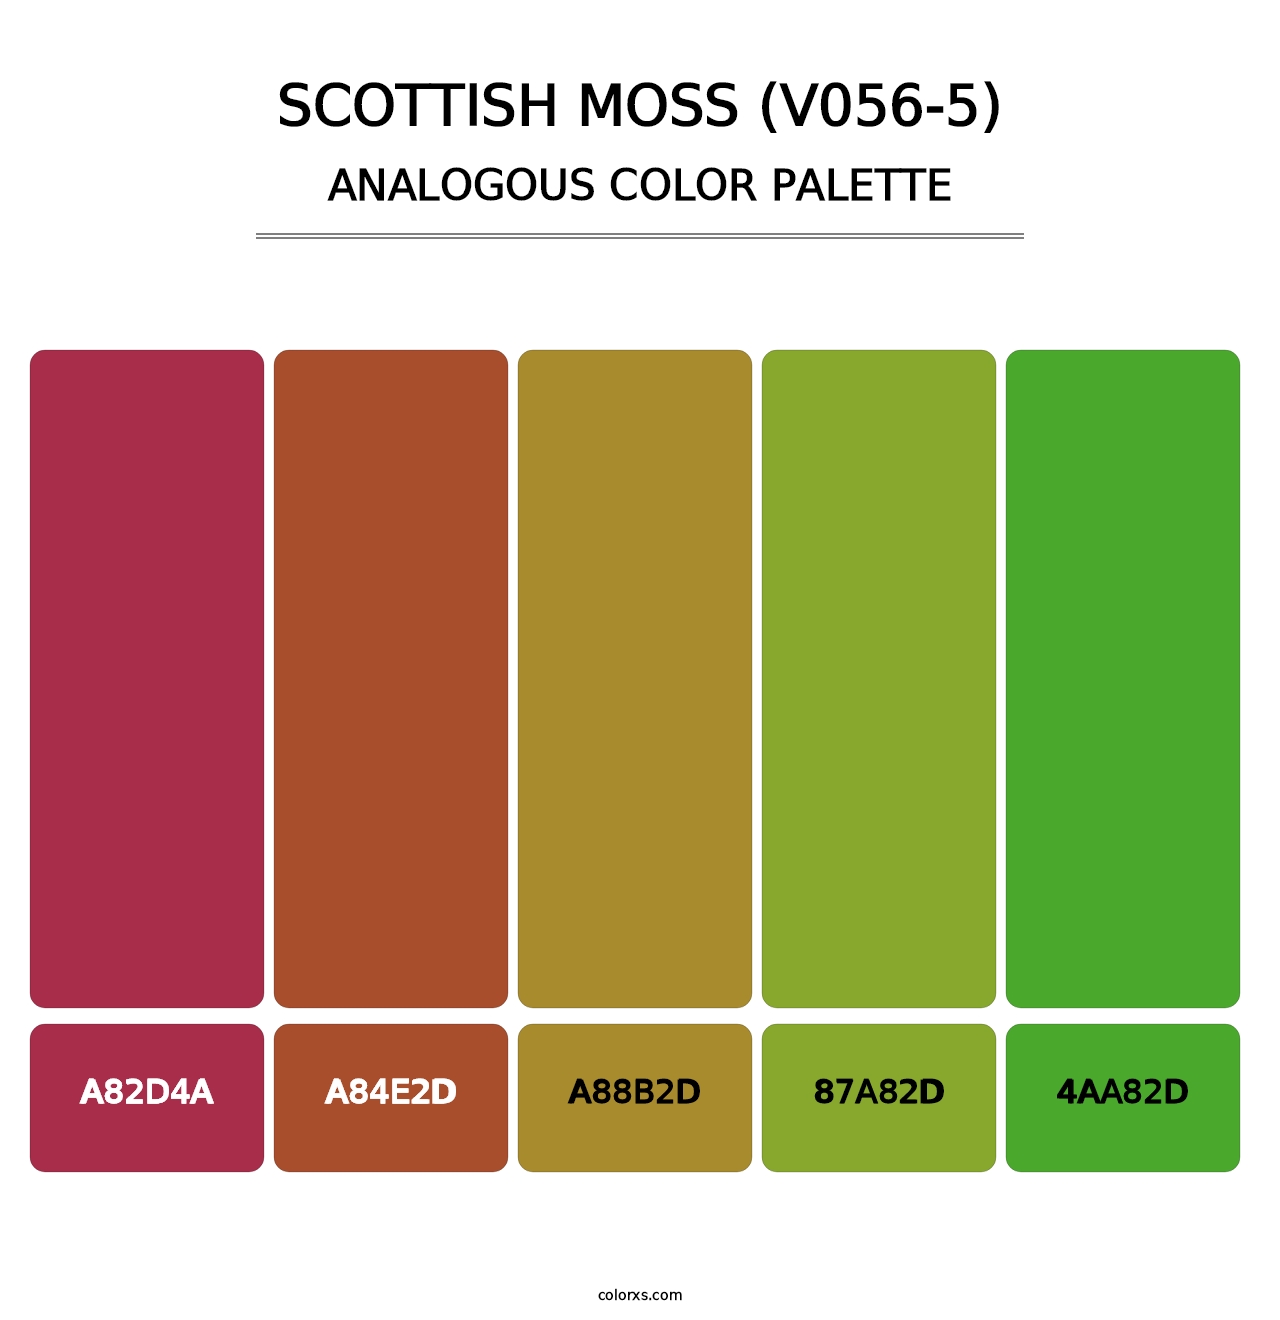 Scottish Moss (V056-5) - Analogous Color Palette